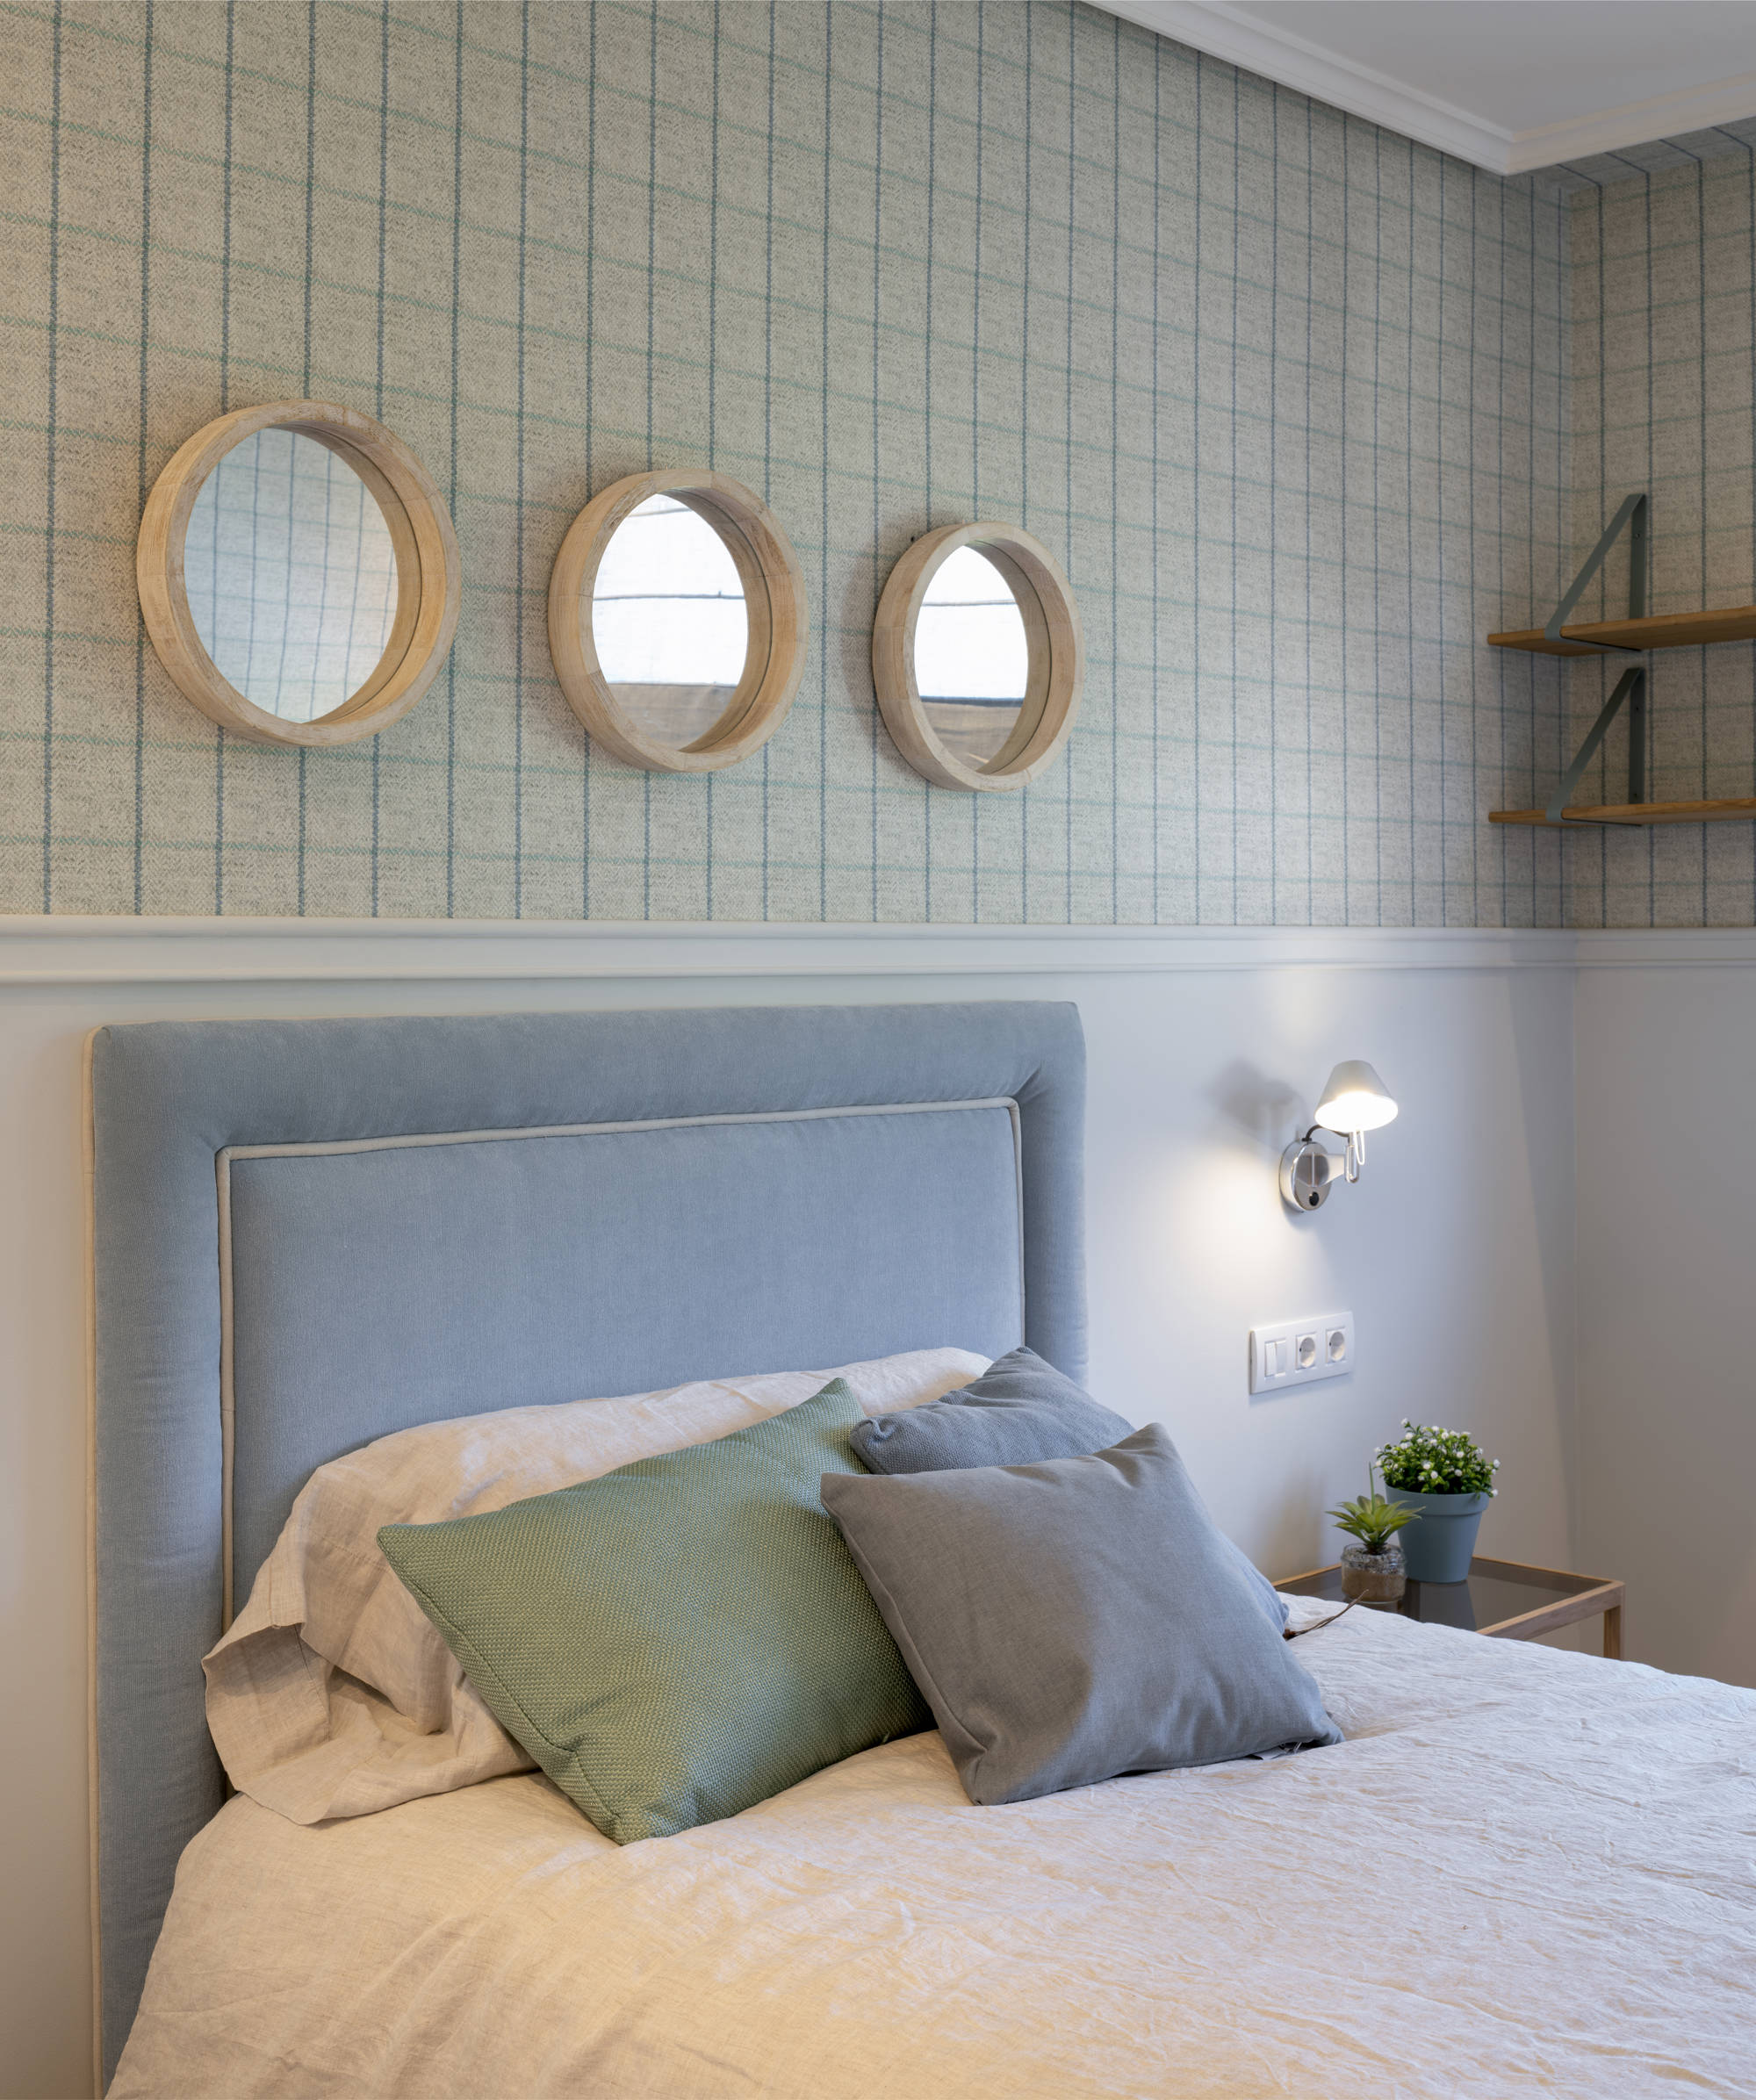 Dormitorio con tres espejos redondos, zócalo y papel pintado y cama con cabecero tapizado en azul